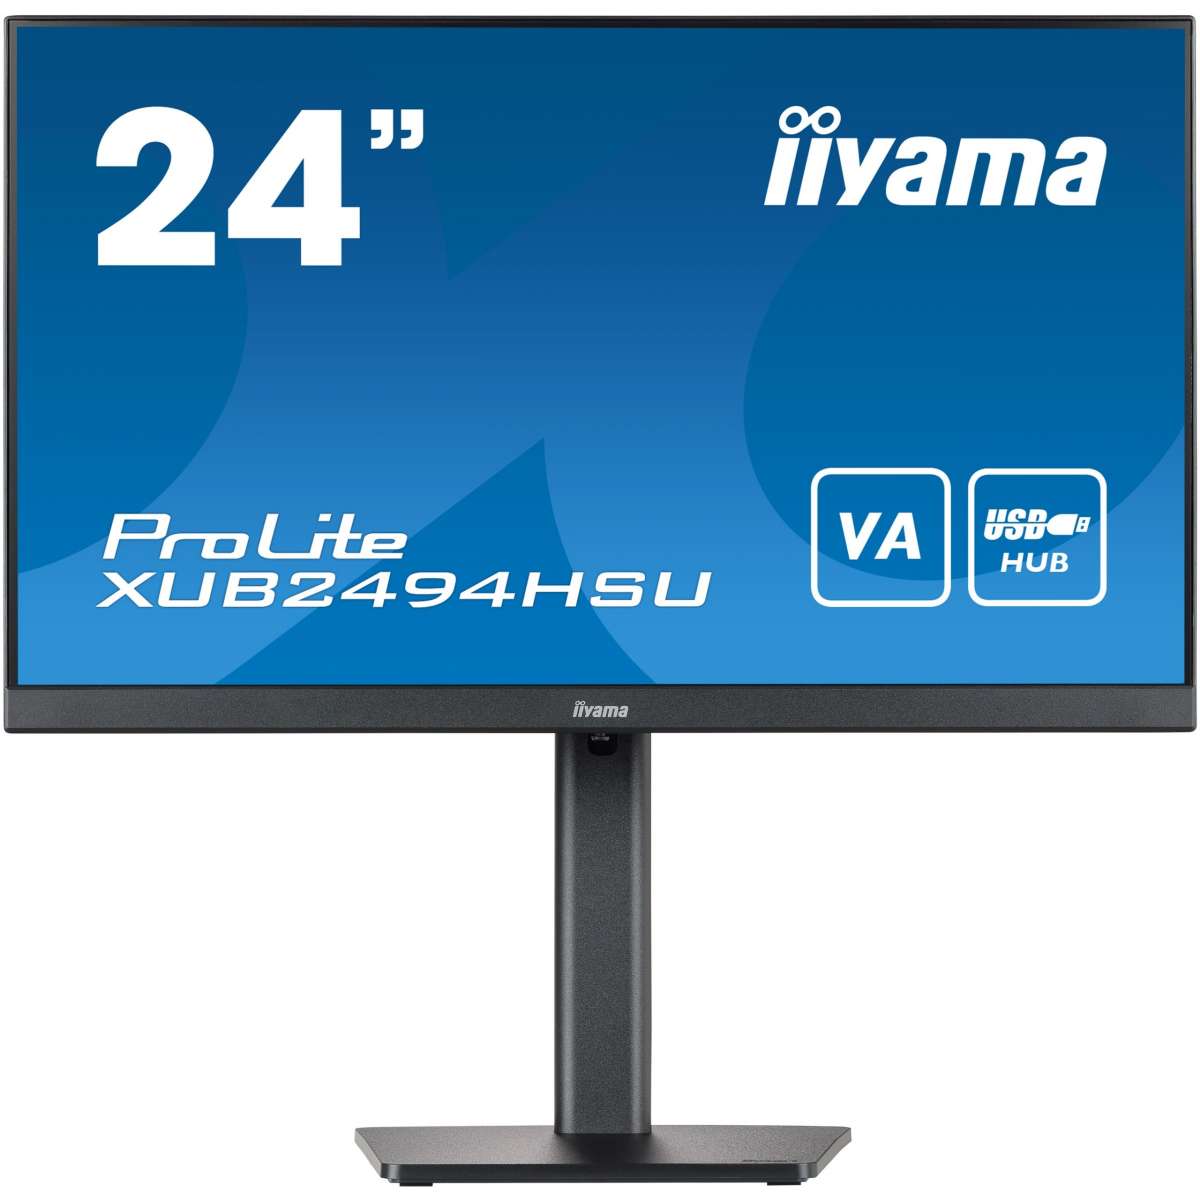 24''/60,5cm (1920x1080) iiyama ProLite XUB2494HSU-B2 16:9 4ms HDMI Displayport VESA Pivot Speaker FullHD Black